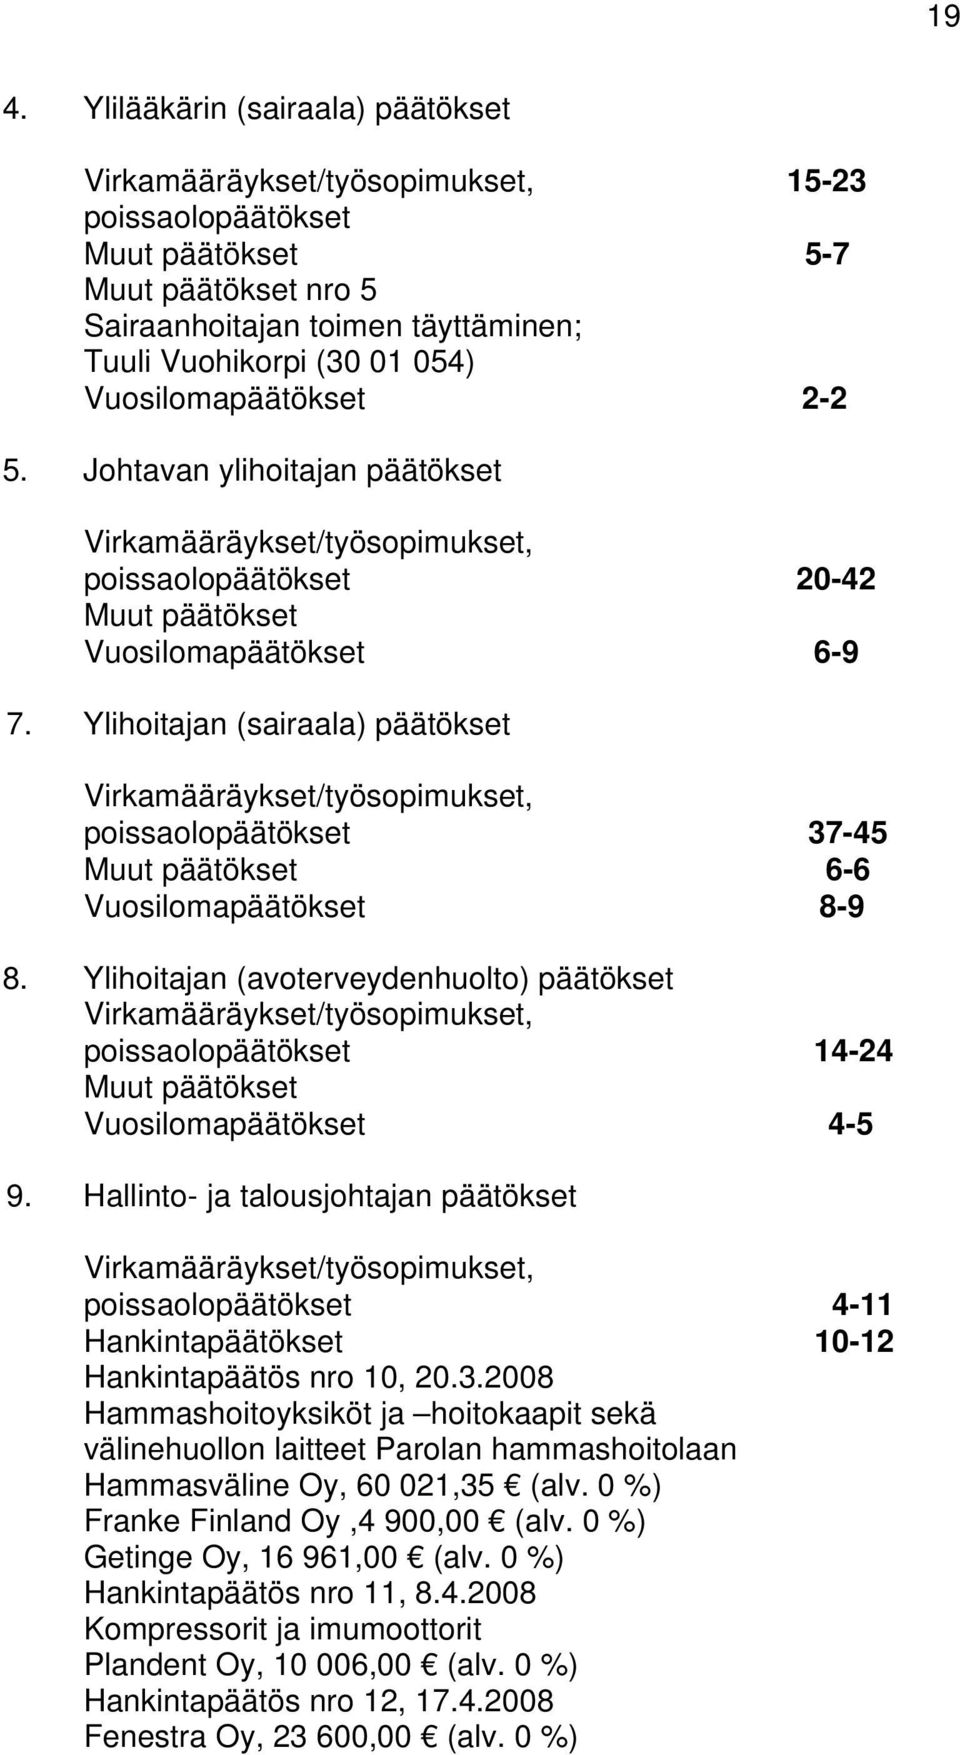 Ylihoitajan (sairaala) päätökset Virkamääräykset/työsopimukset, poissaolopäätökset 37-45 Muut päätökset 6-6 Vuosilomapäätökset 8-9 8.